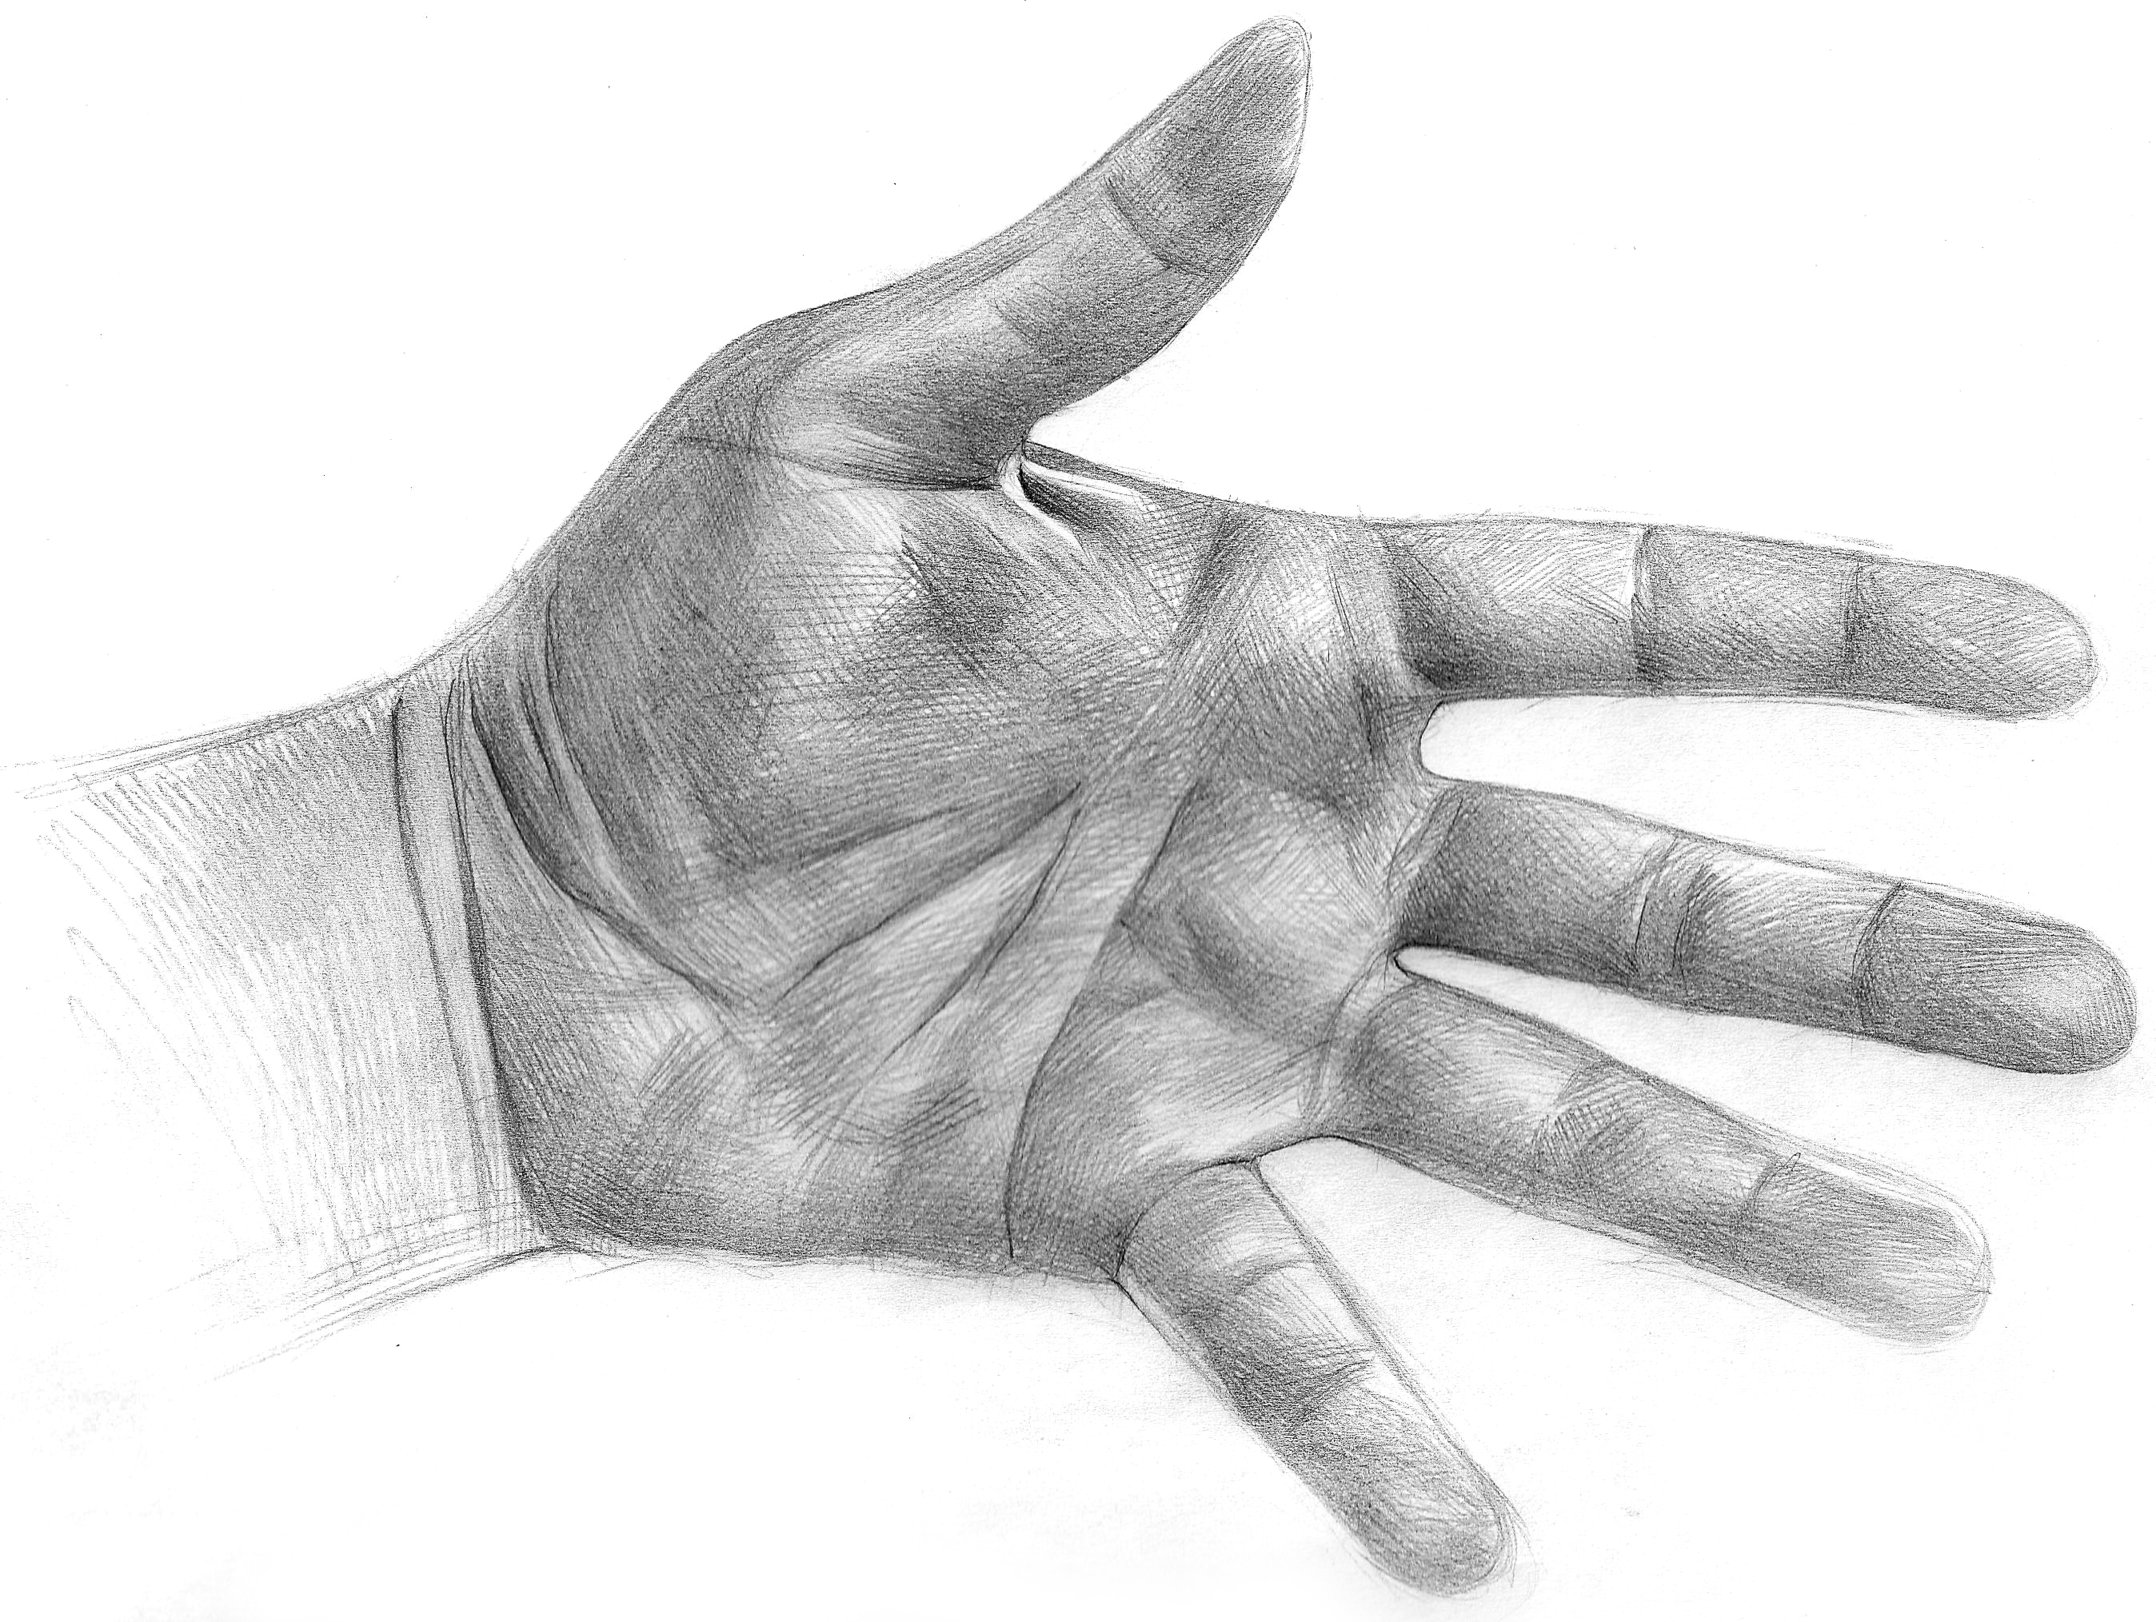 Hand Sketch by LuisSanchez on DeviantArt